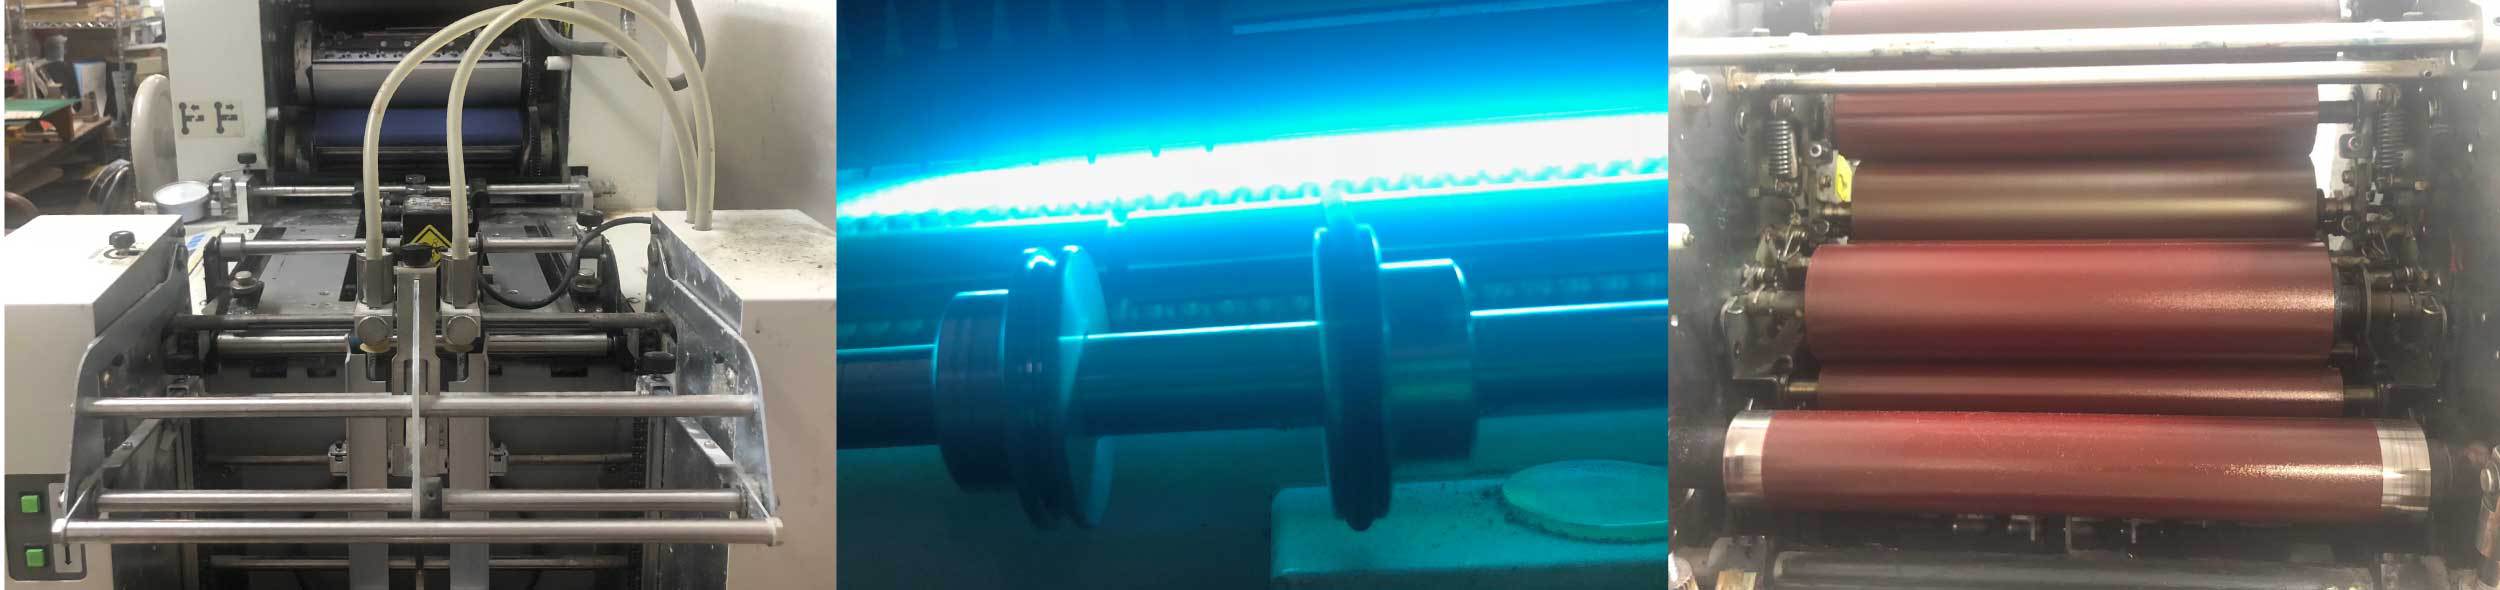 UV単面印刷機